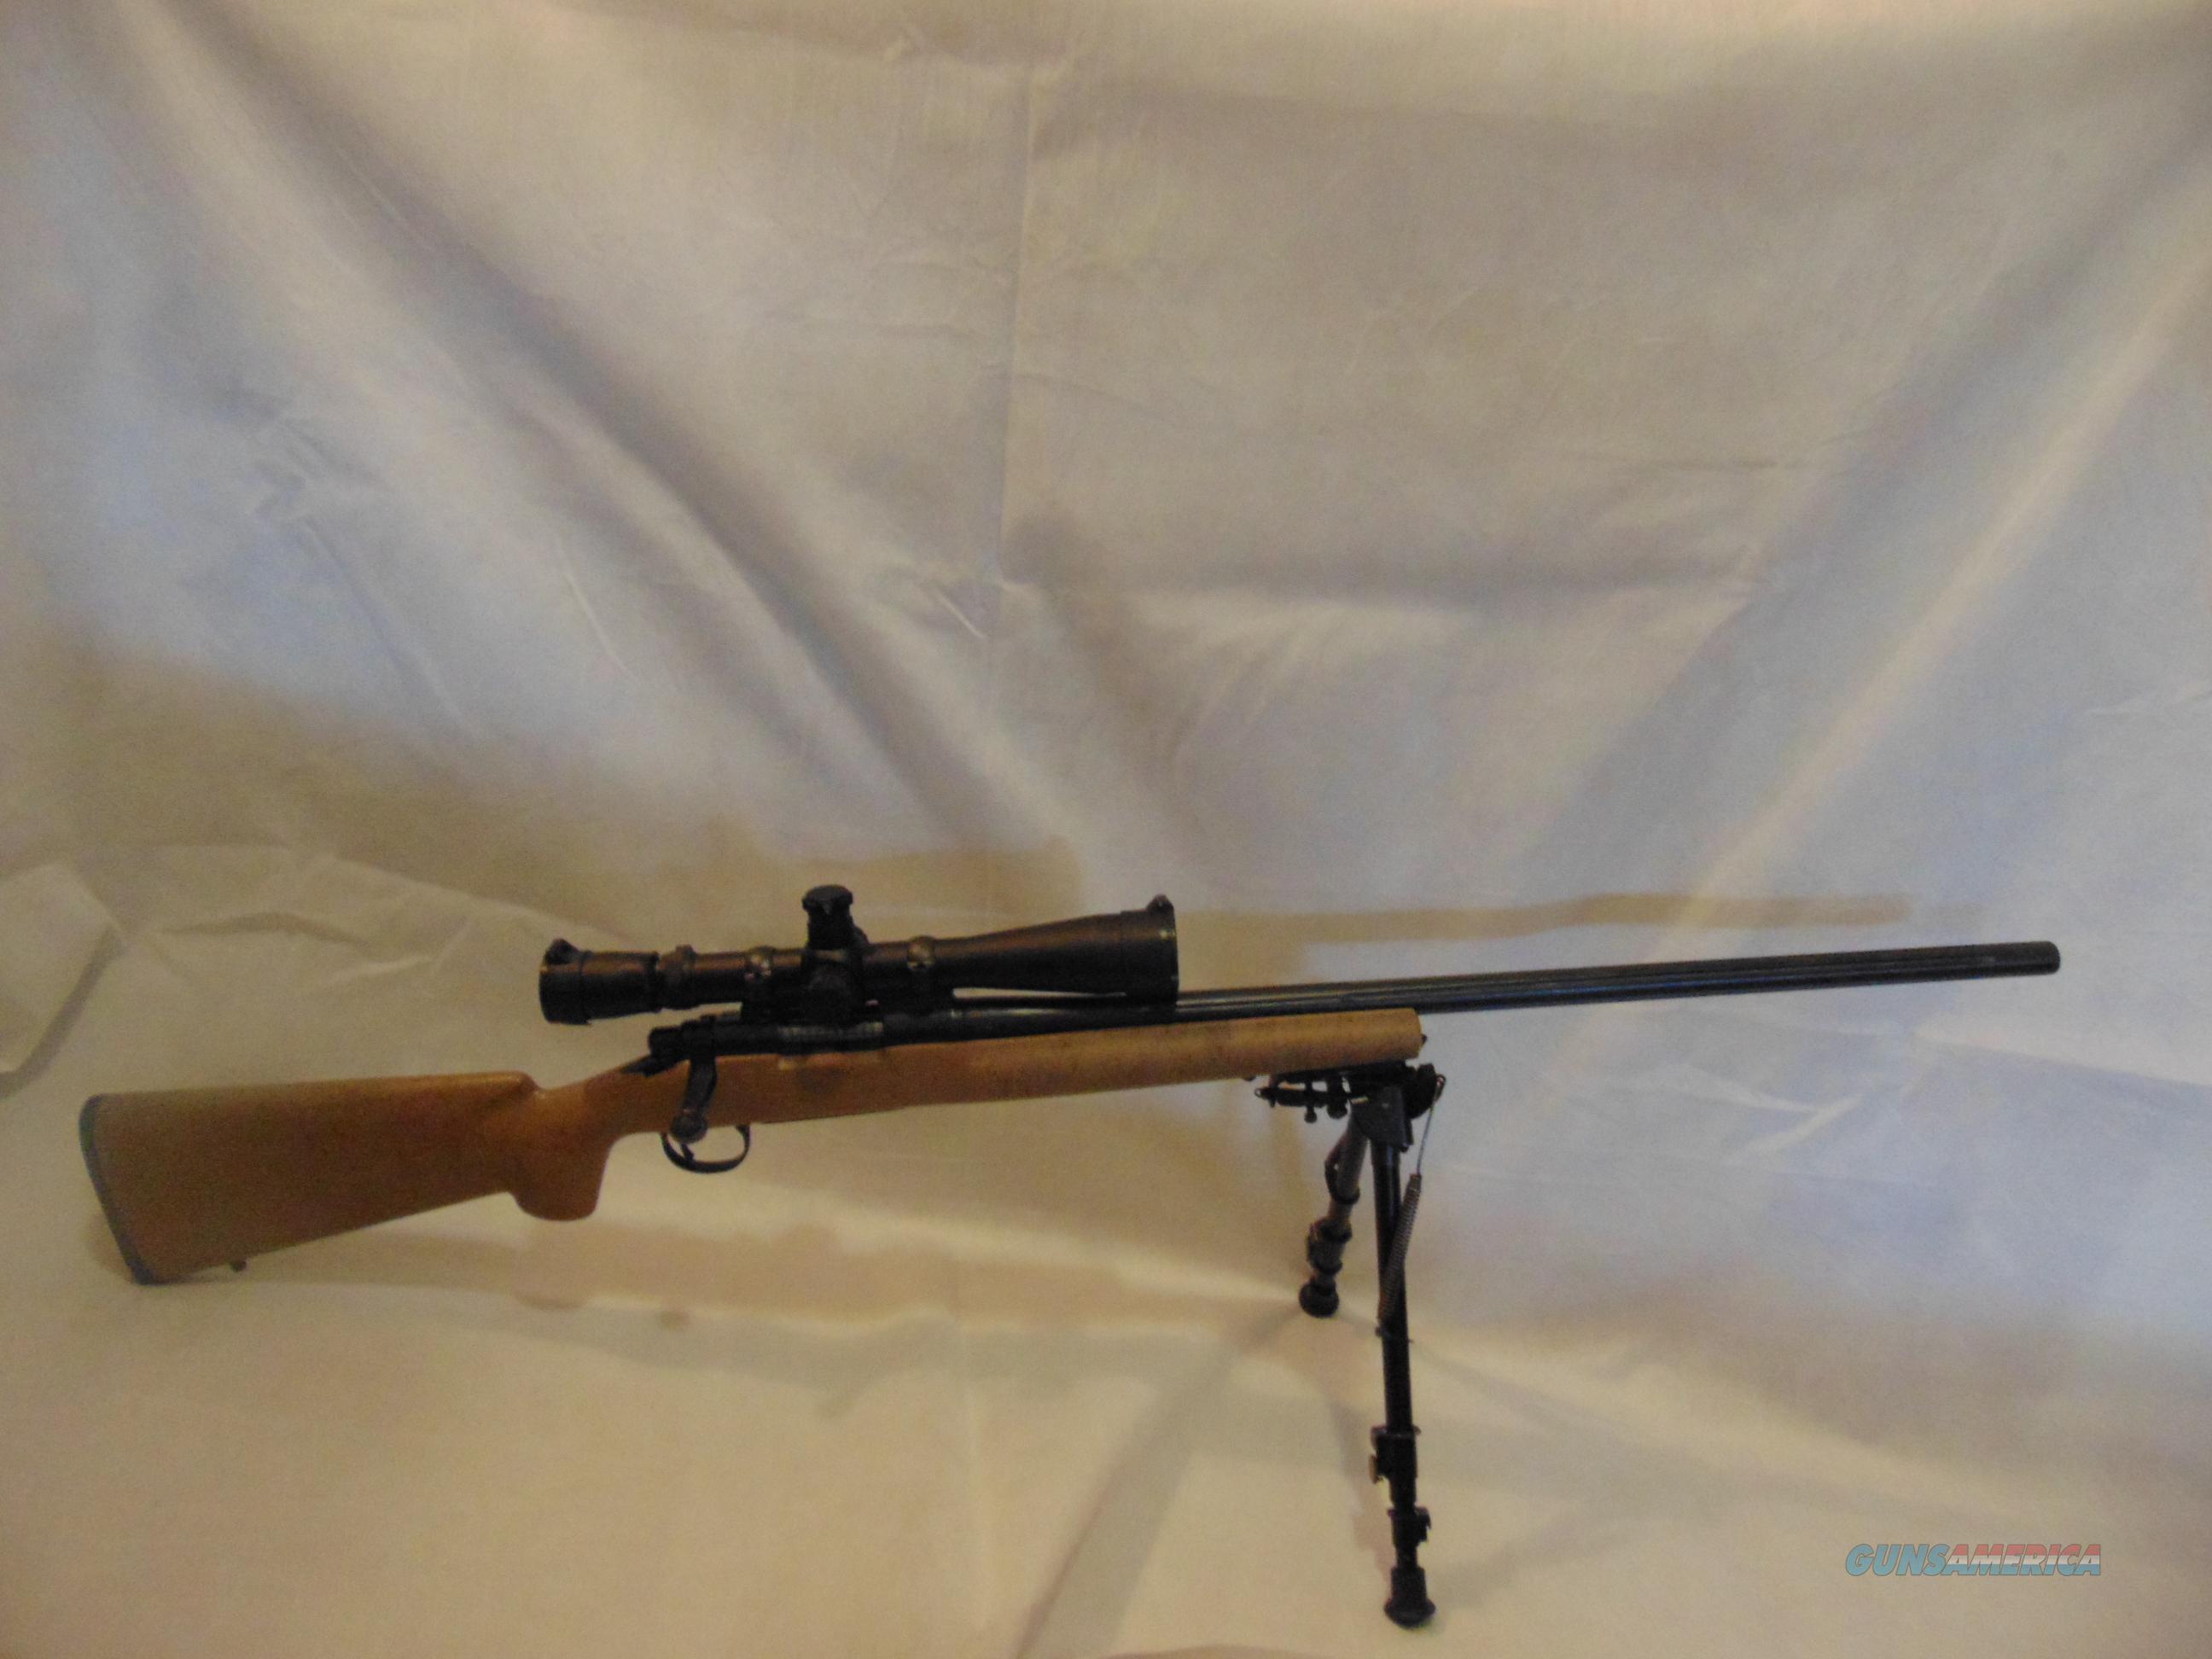 remington 700 308 fluted barrel